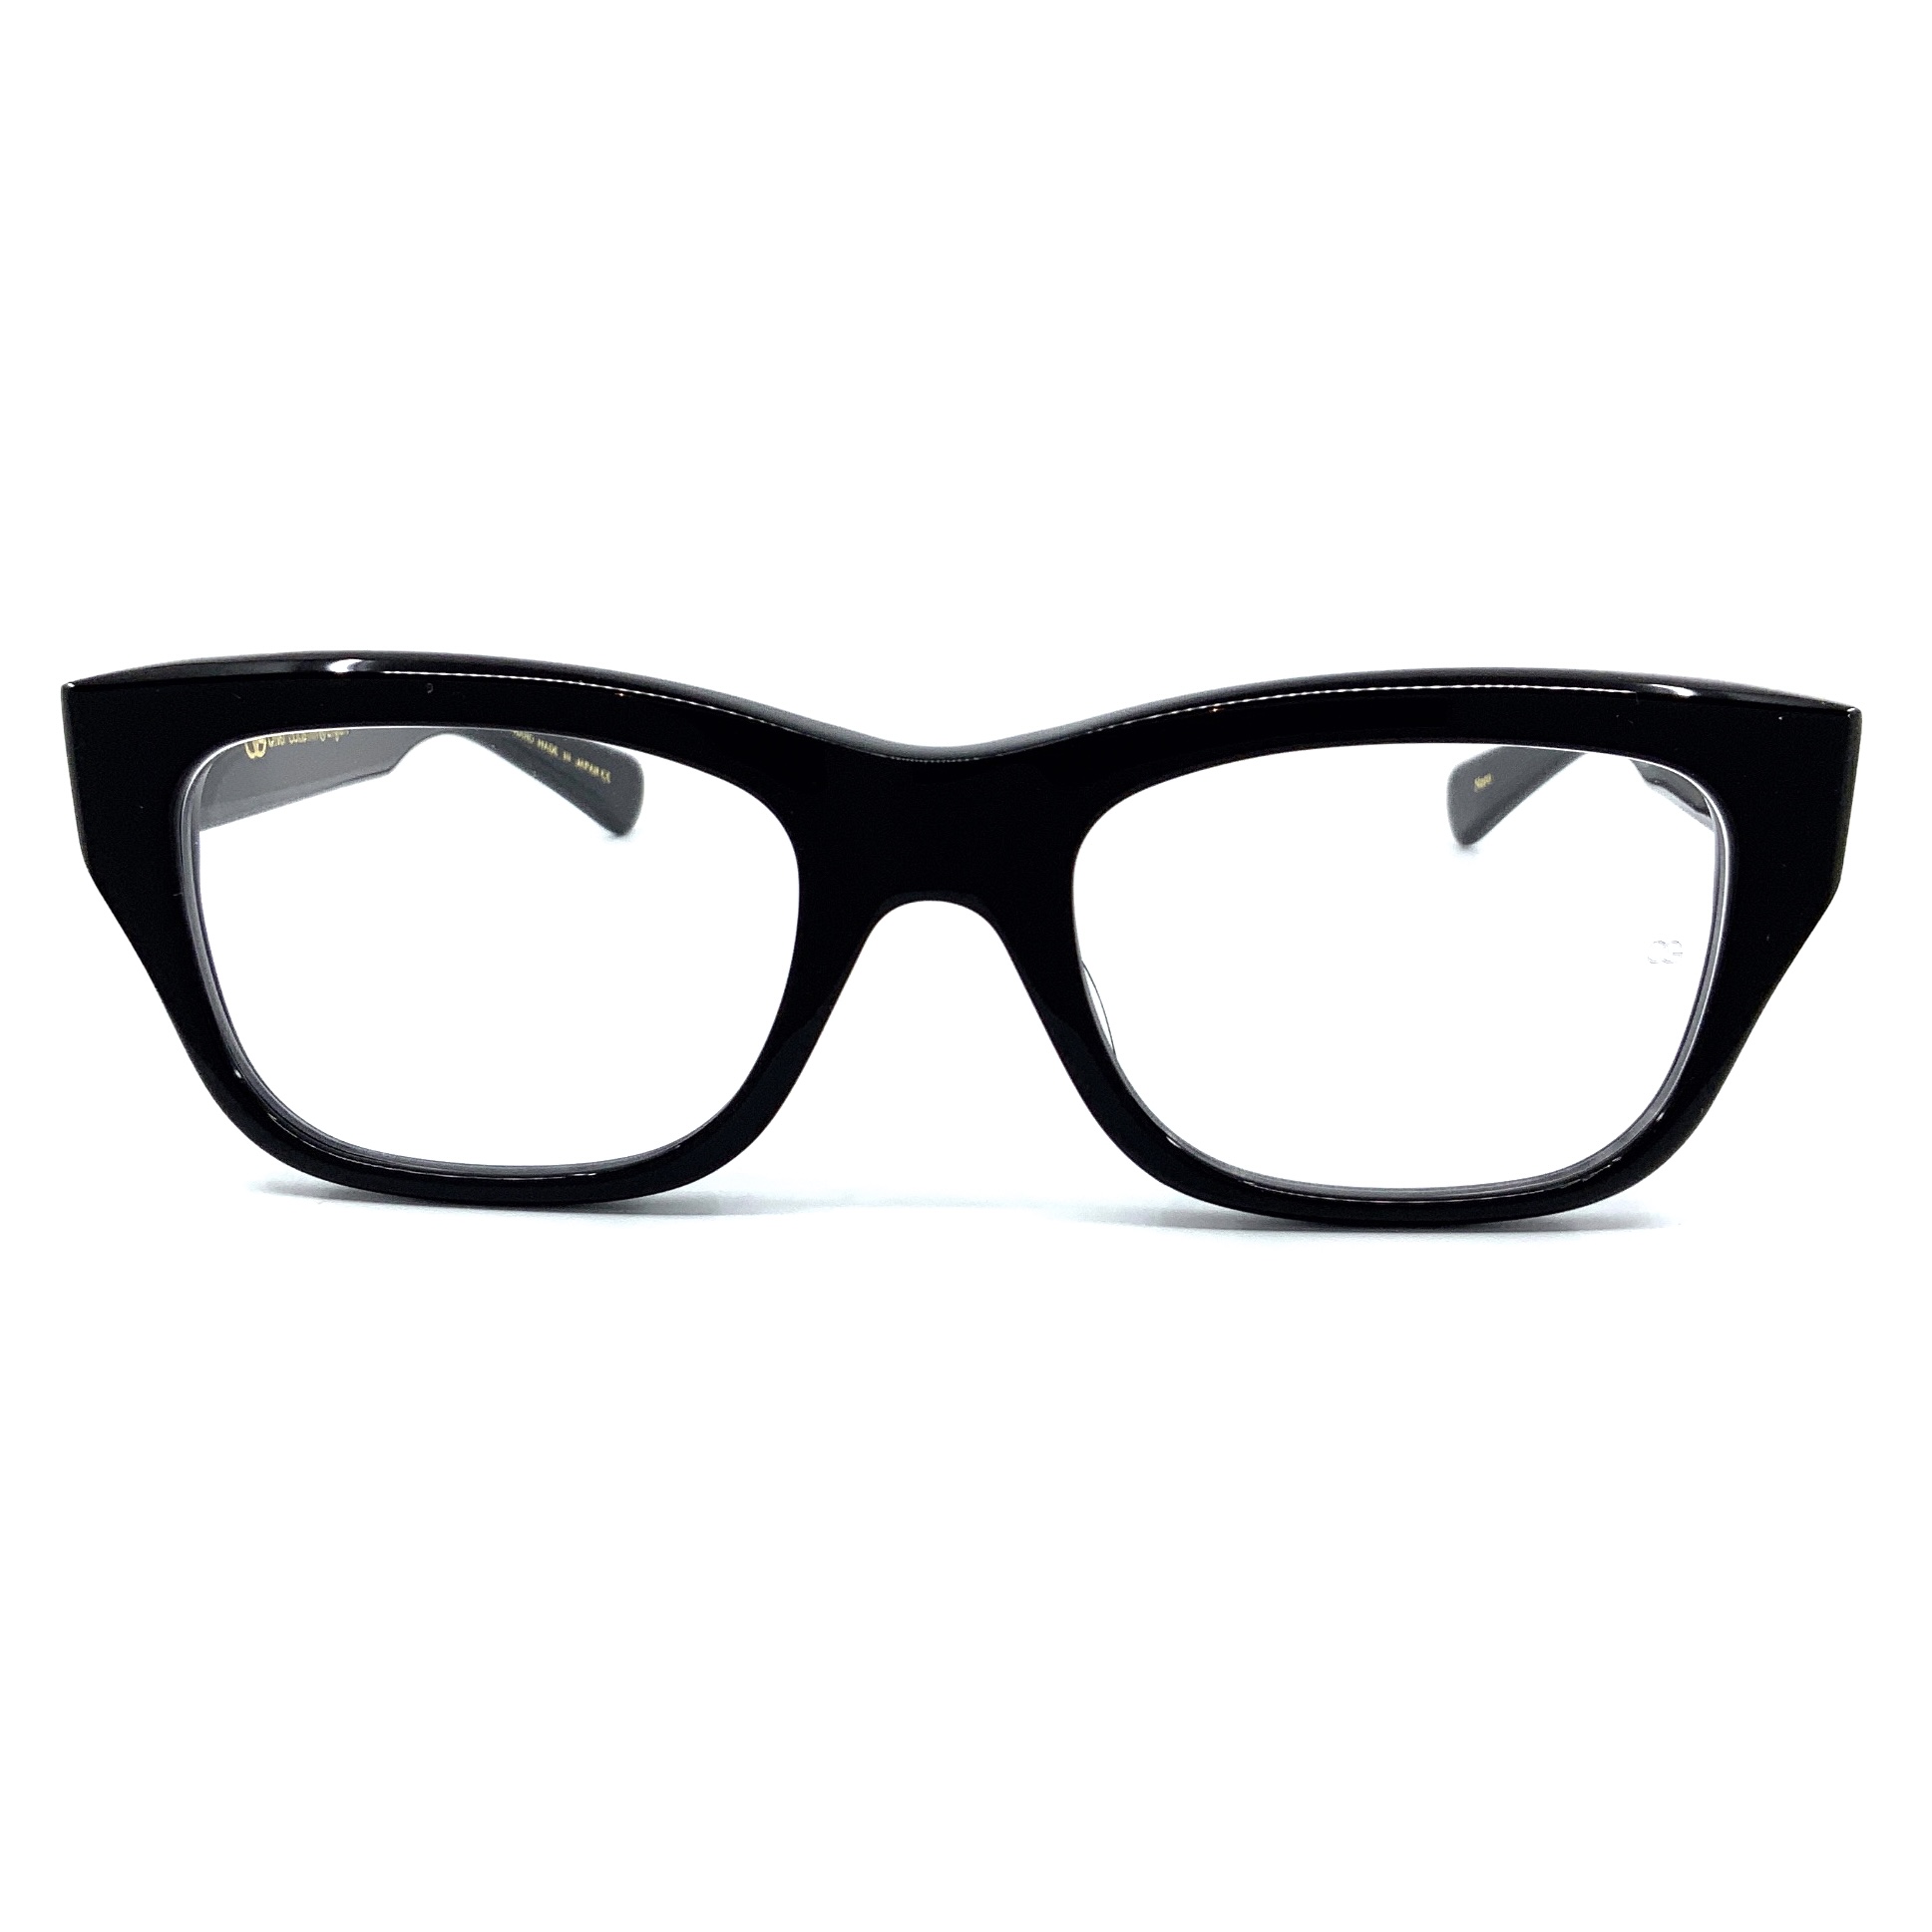 【新品未使用】オリバーゴールドスミスの眼鏡(レアモデル)